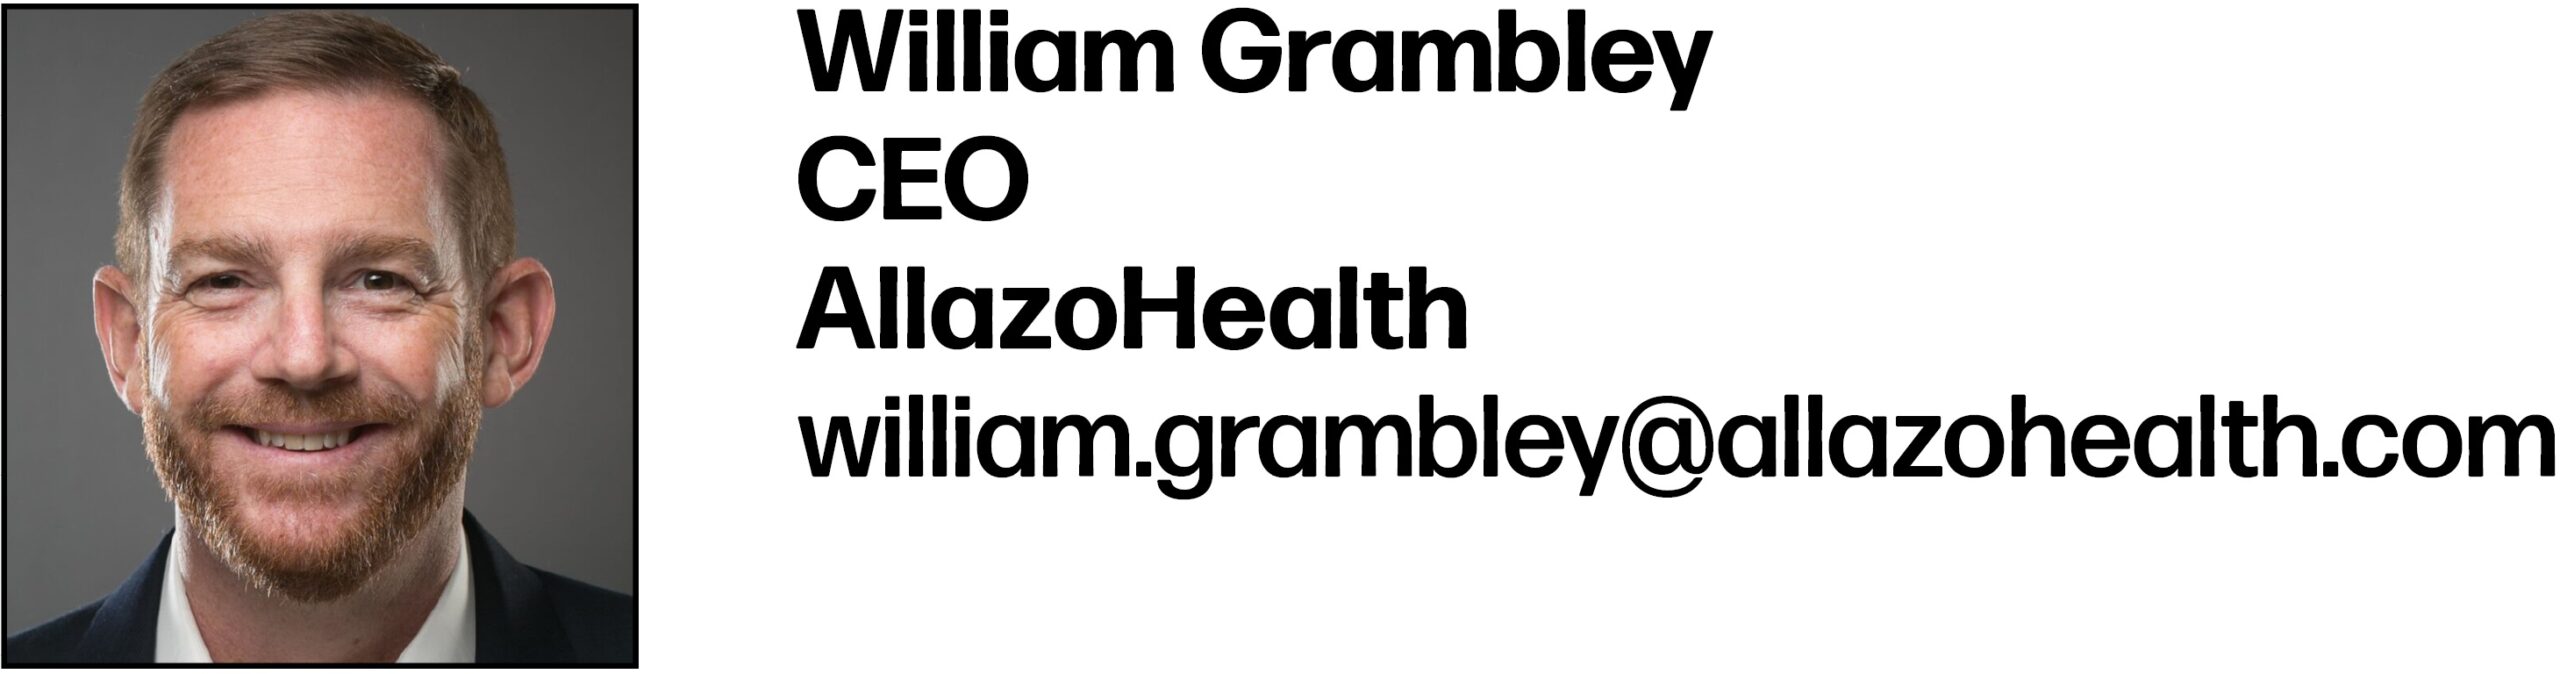 William Grambley
CEO
AllazoHealth
william.grambley@allazohealth.com